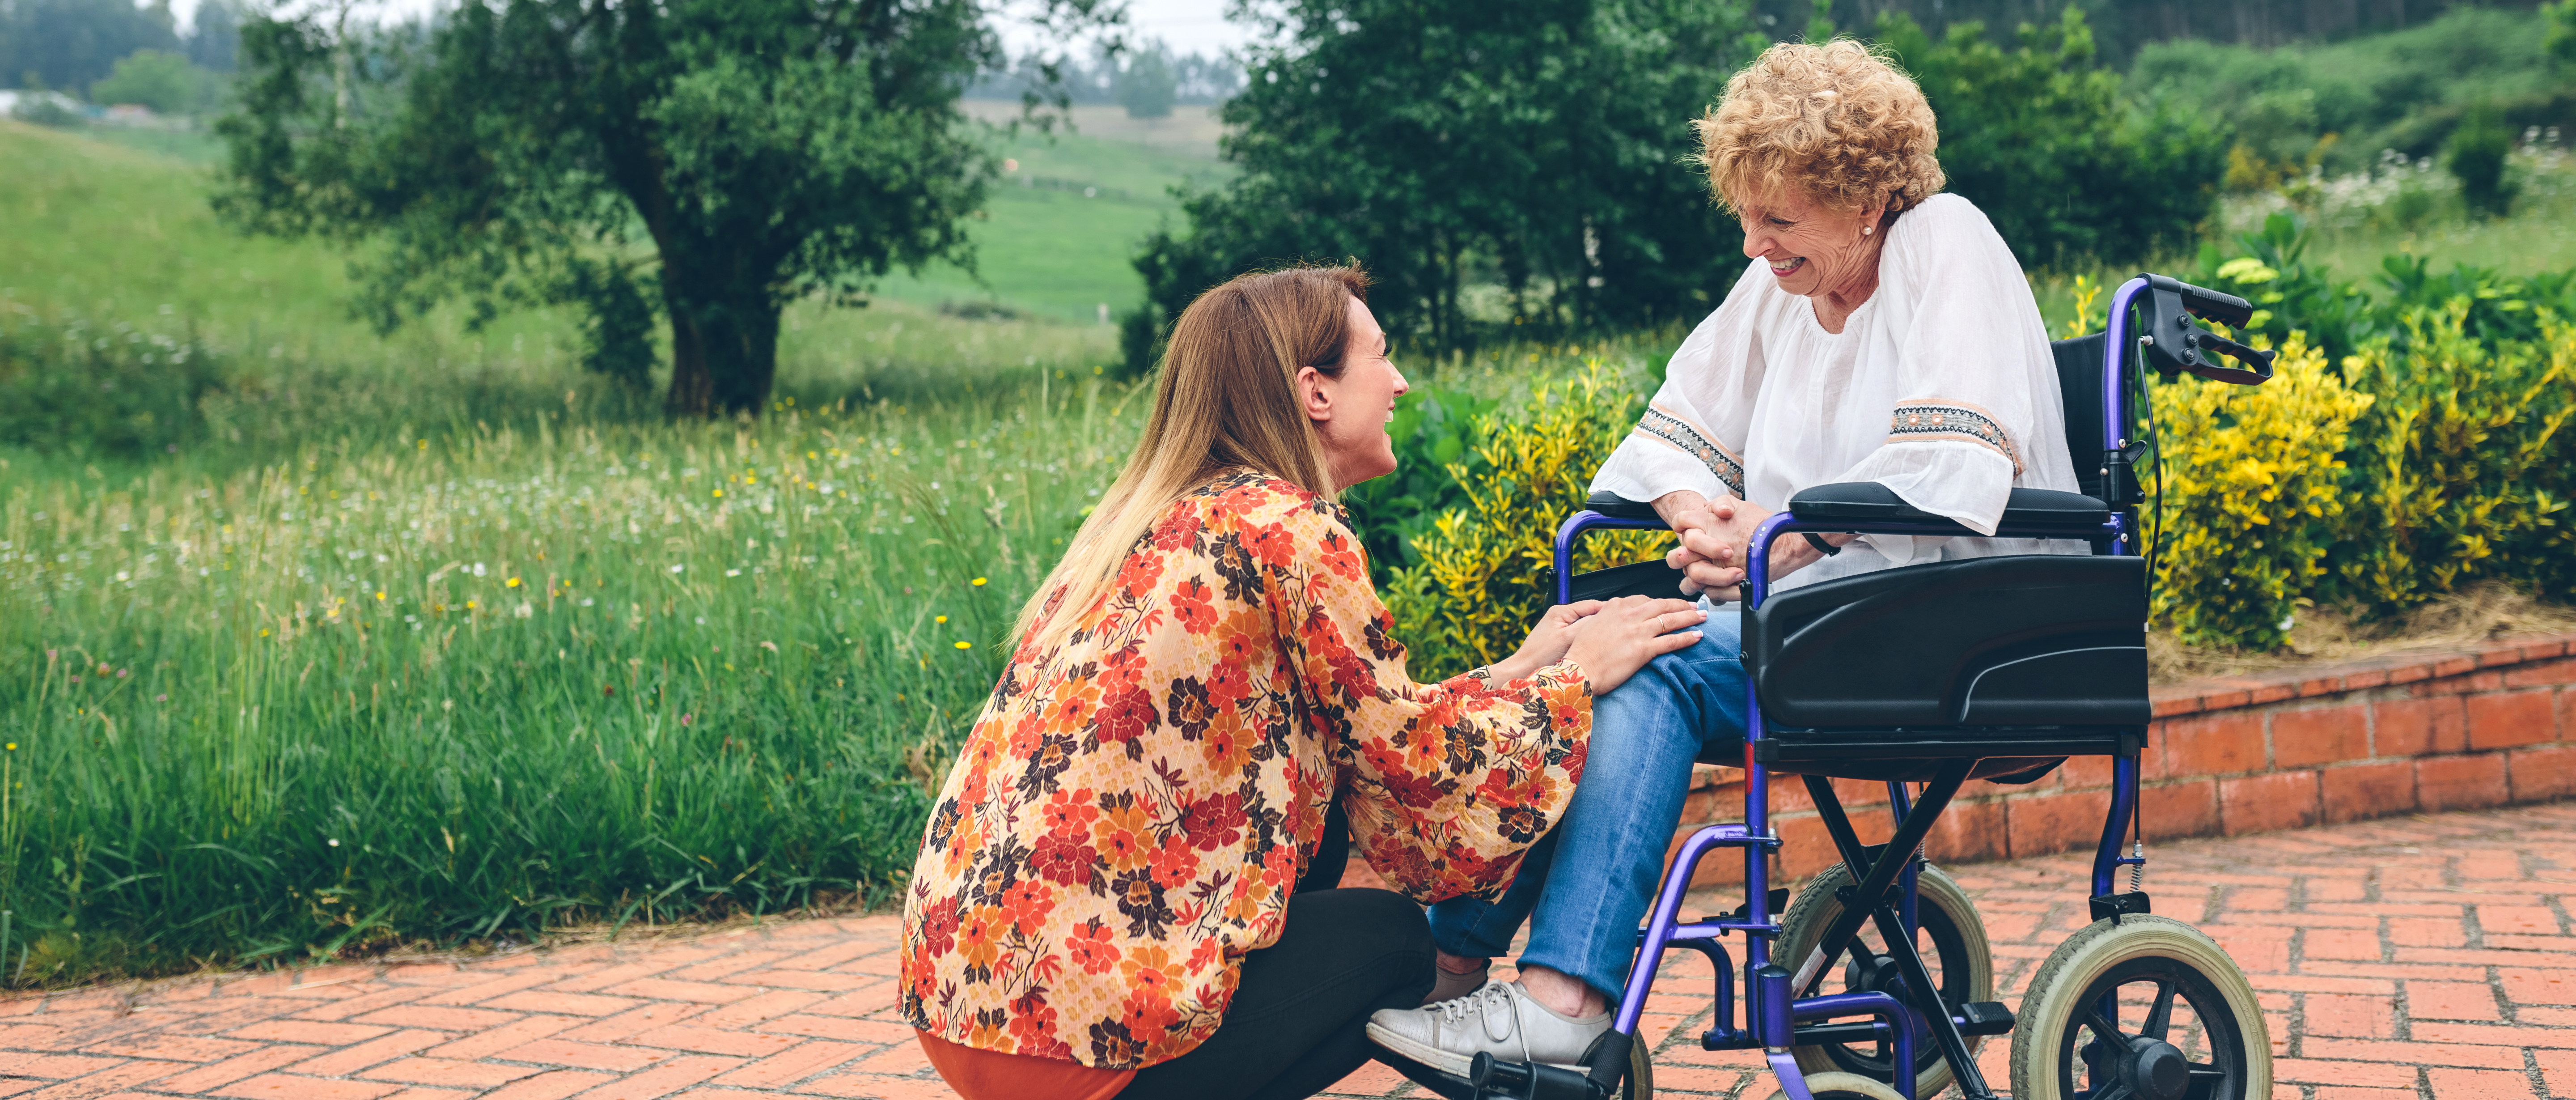 Los cuidados paliativos preparan al paciente y la familia para todo el proceso de una enfermedad.  (Foto Prensa Libre: Shutterstock)